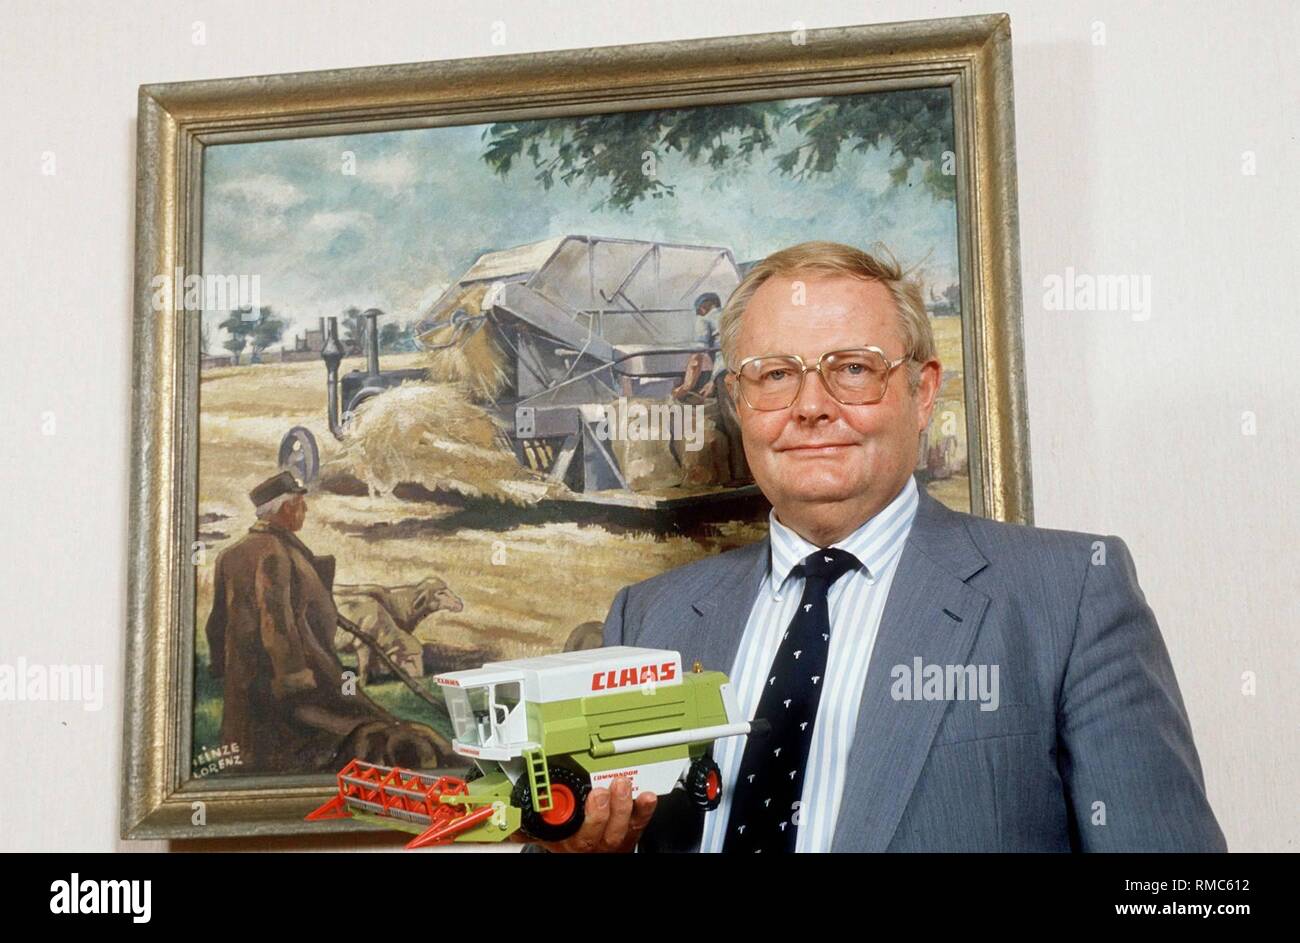 Helmut Claas, testa del macchinario agricolo costruttore Claas in Harsewinkel vicino Guetersloh (Renania settentrionale-Vestfalia), che celebra il suo settantacinquesimo compleanno il 16 luglio, 2001. Dal 1975, quando egli ha rilevato l'azienda di famiglia da suo padre agosto, Helmut Claas ha trasformato la società in una società globale con oltre due miliardi di marchi in vendita e 5.600 dipendenti. Le sue invenzioni rivoluzionato il settore agricolo di tecnologia e ingegneria. Tuttavia il cacciatore amatoriale alloggiato in Westfalia e ha festeggiato il suo settantacinquesimo compleanno modestamente nella cerchia dei più vicini la famiglia e gli amici. Foto Stock